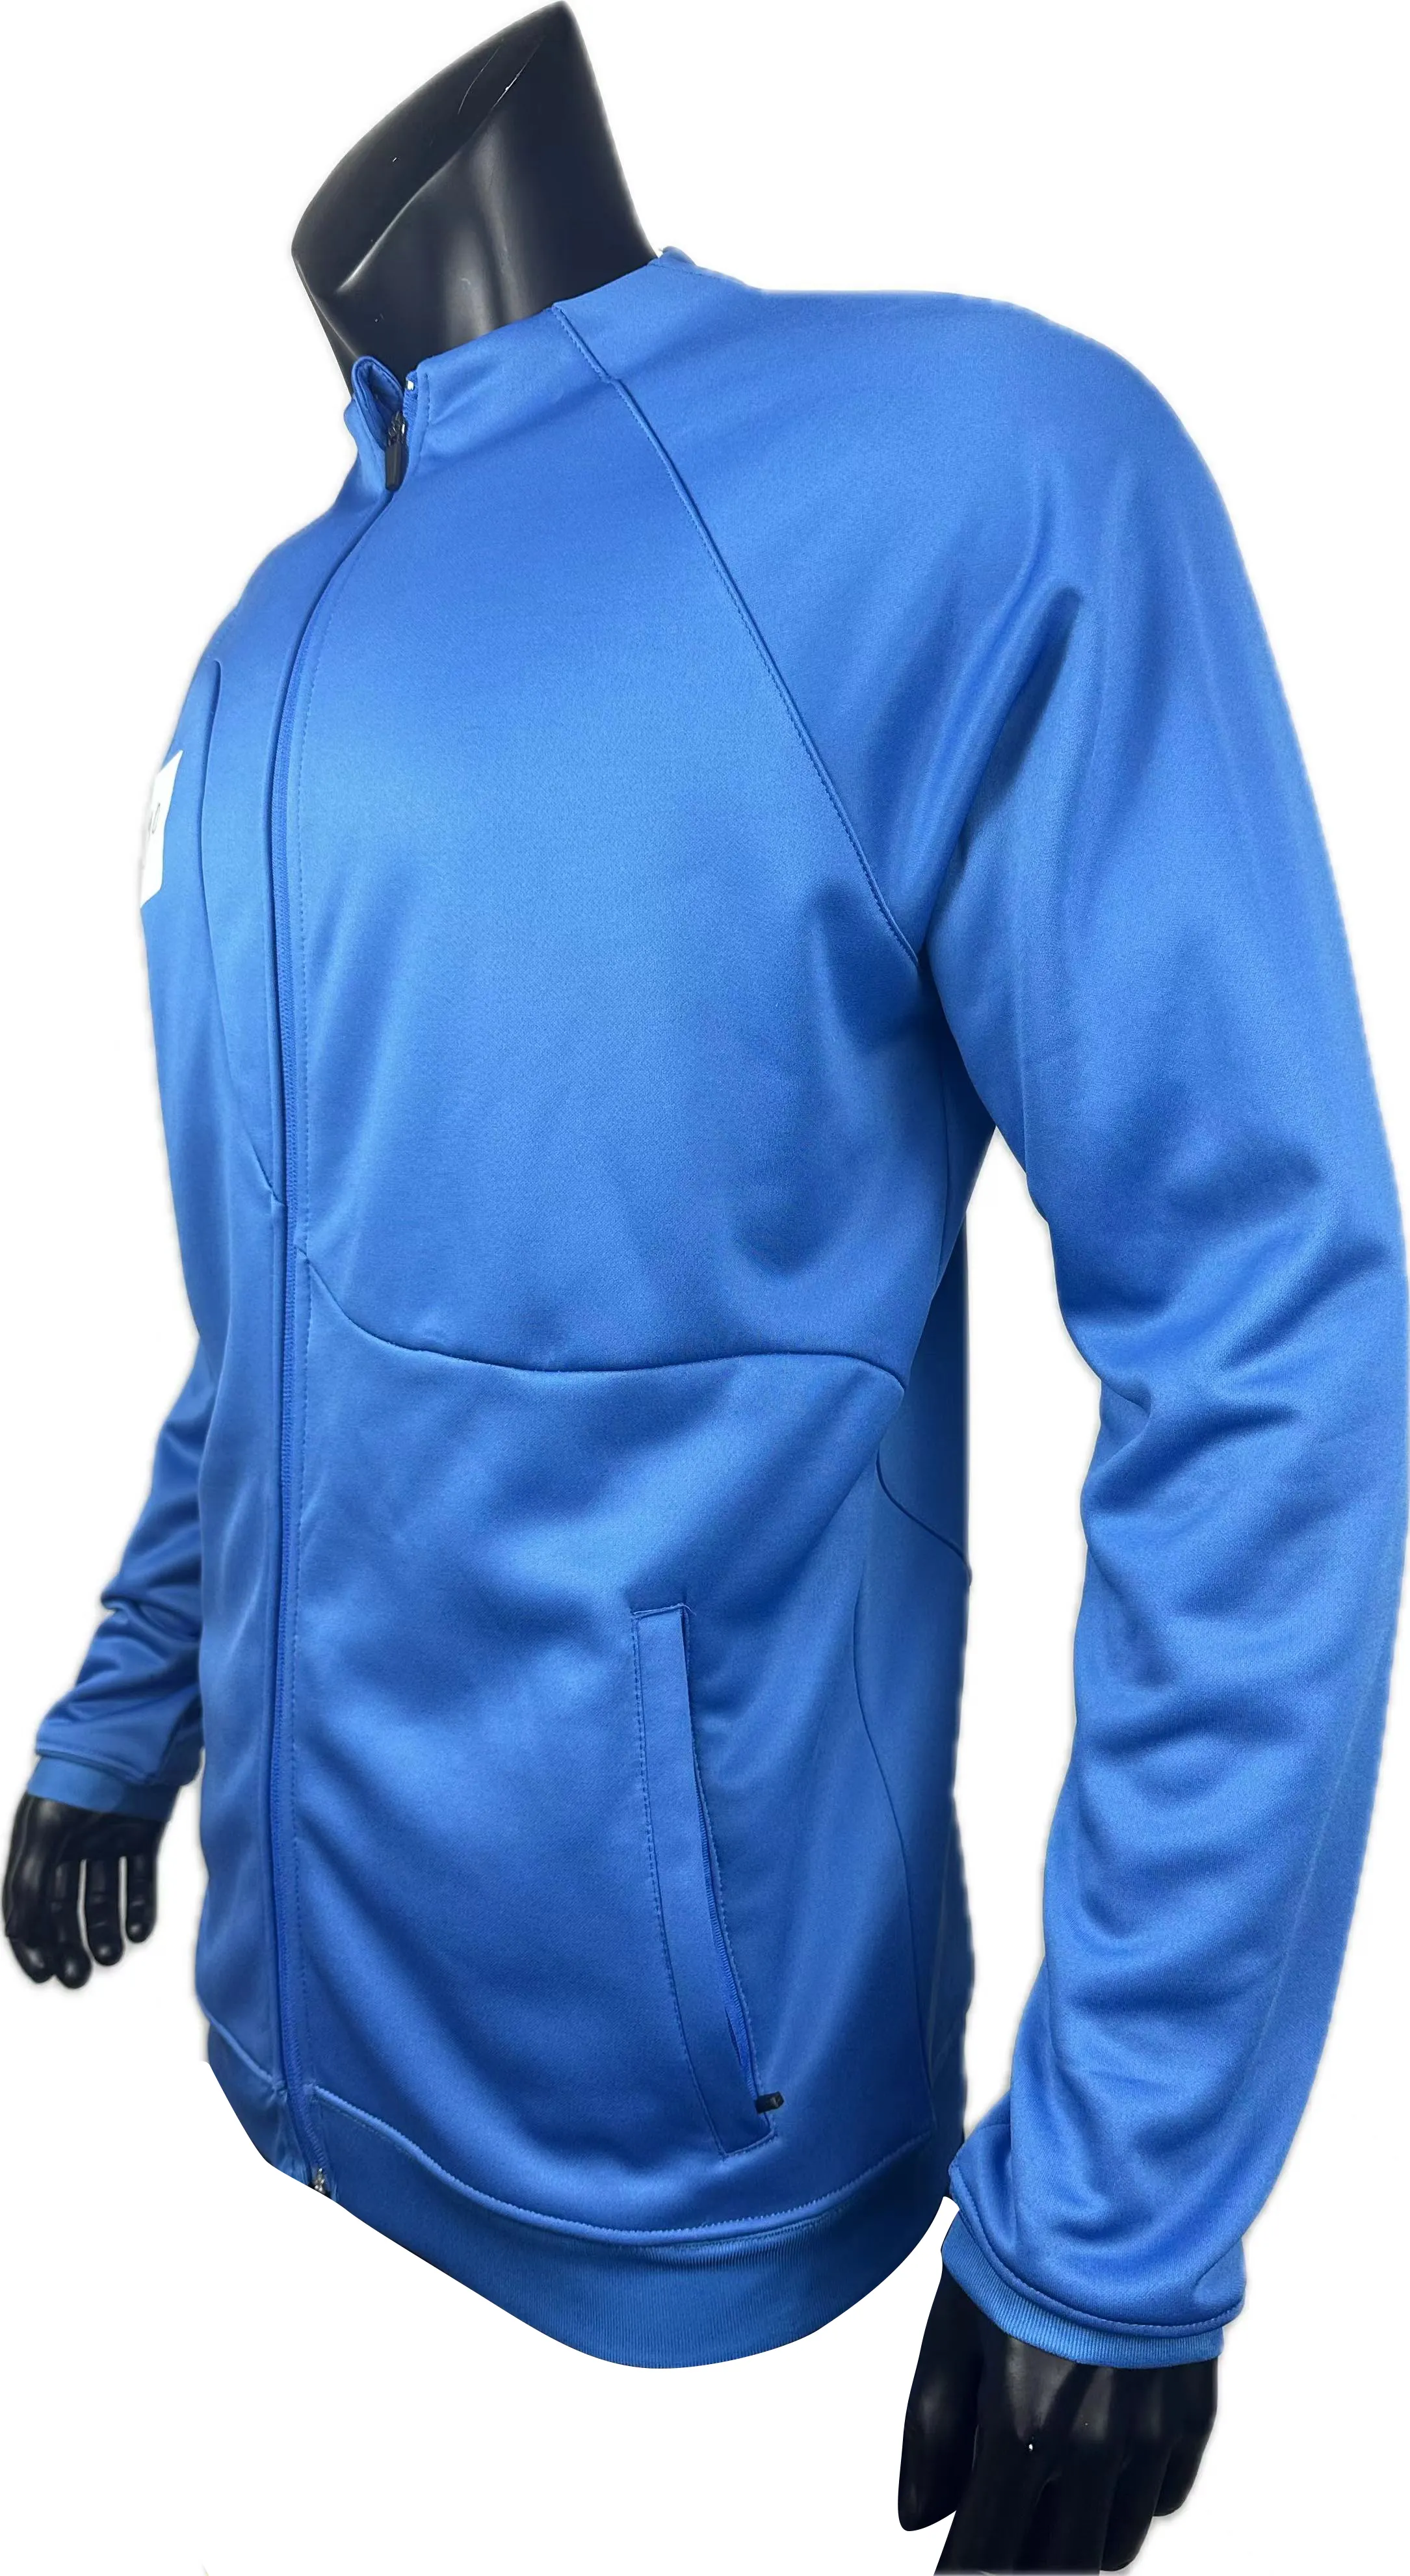 Jaqueta com zíper personalizada para homens, jaqueta bordada plus size, roupa de treino com logotipo personalizado, roupa esportiva unissex